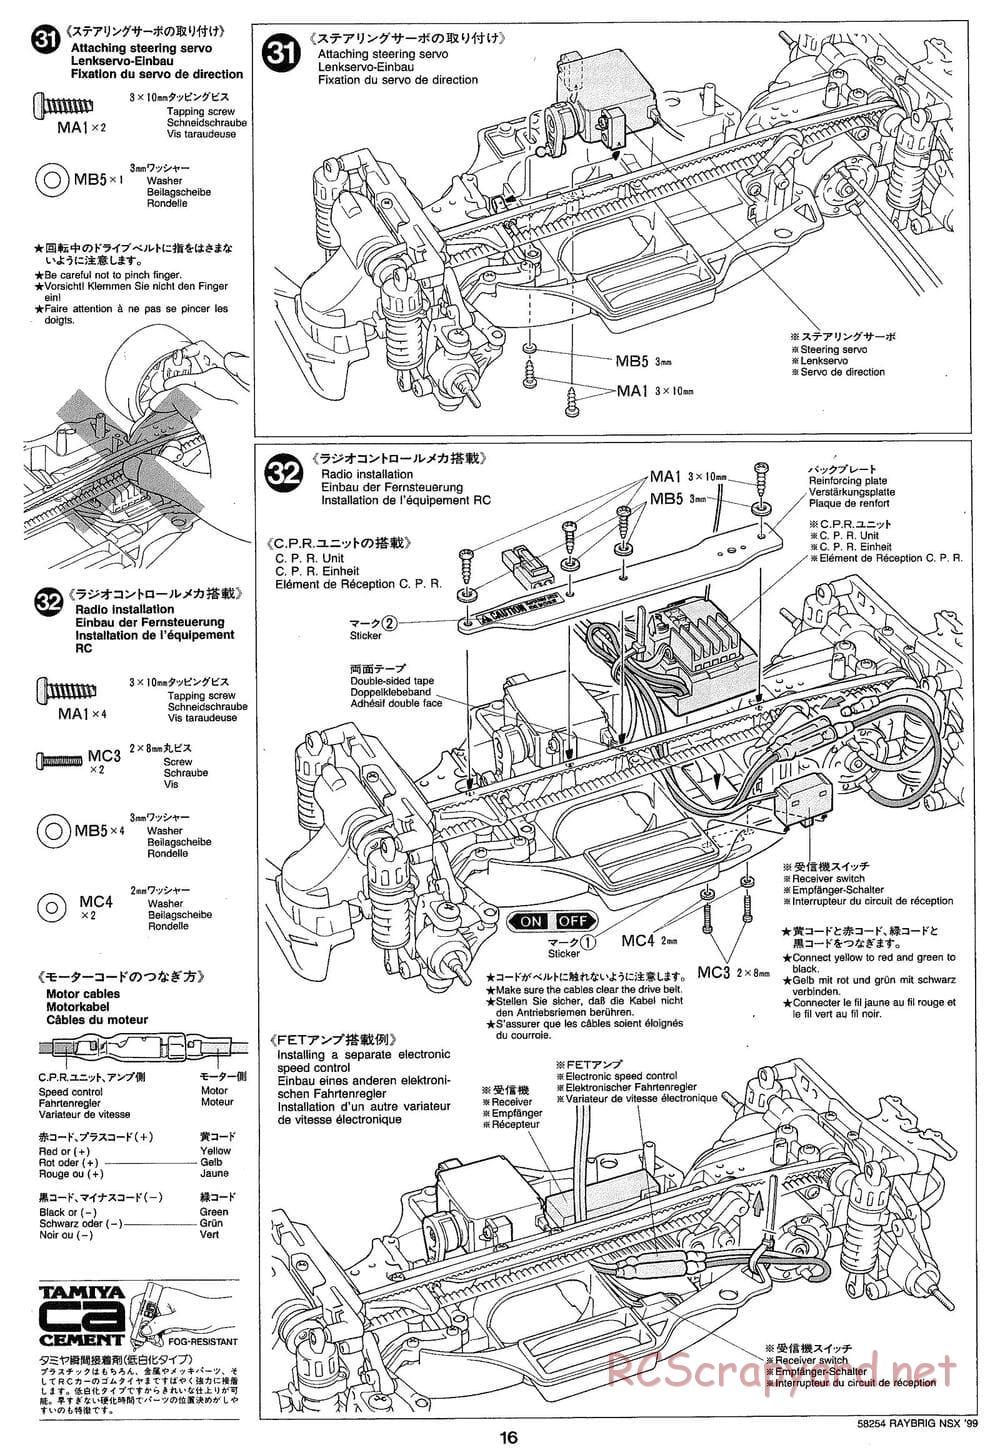 Tamiya - Raybrig NSX 99 - TA-03R Chassis - Manual - Page 16